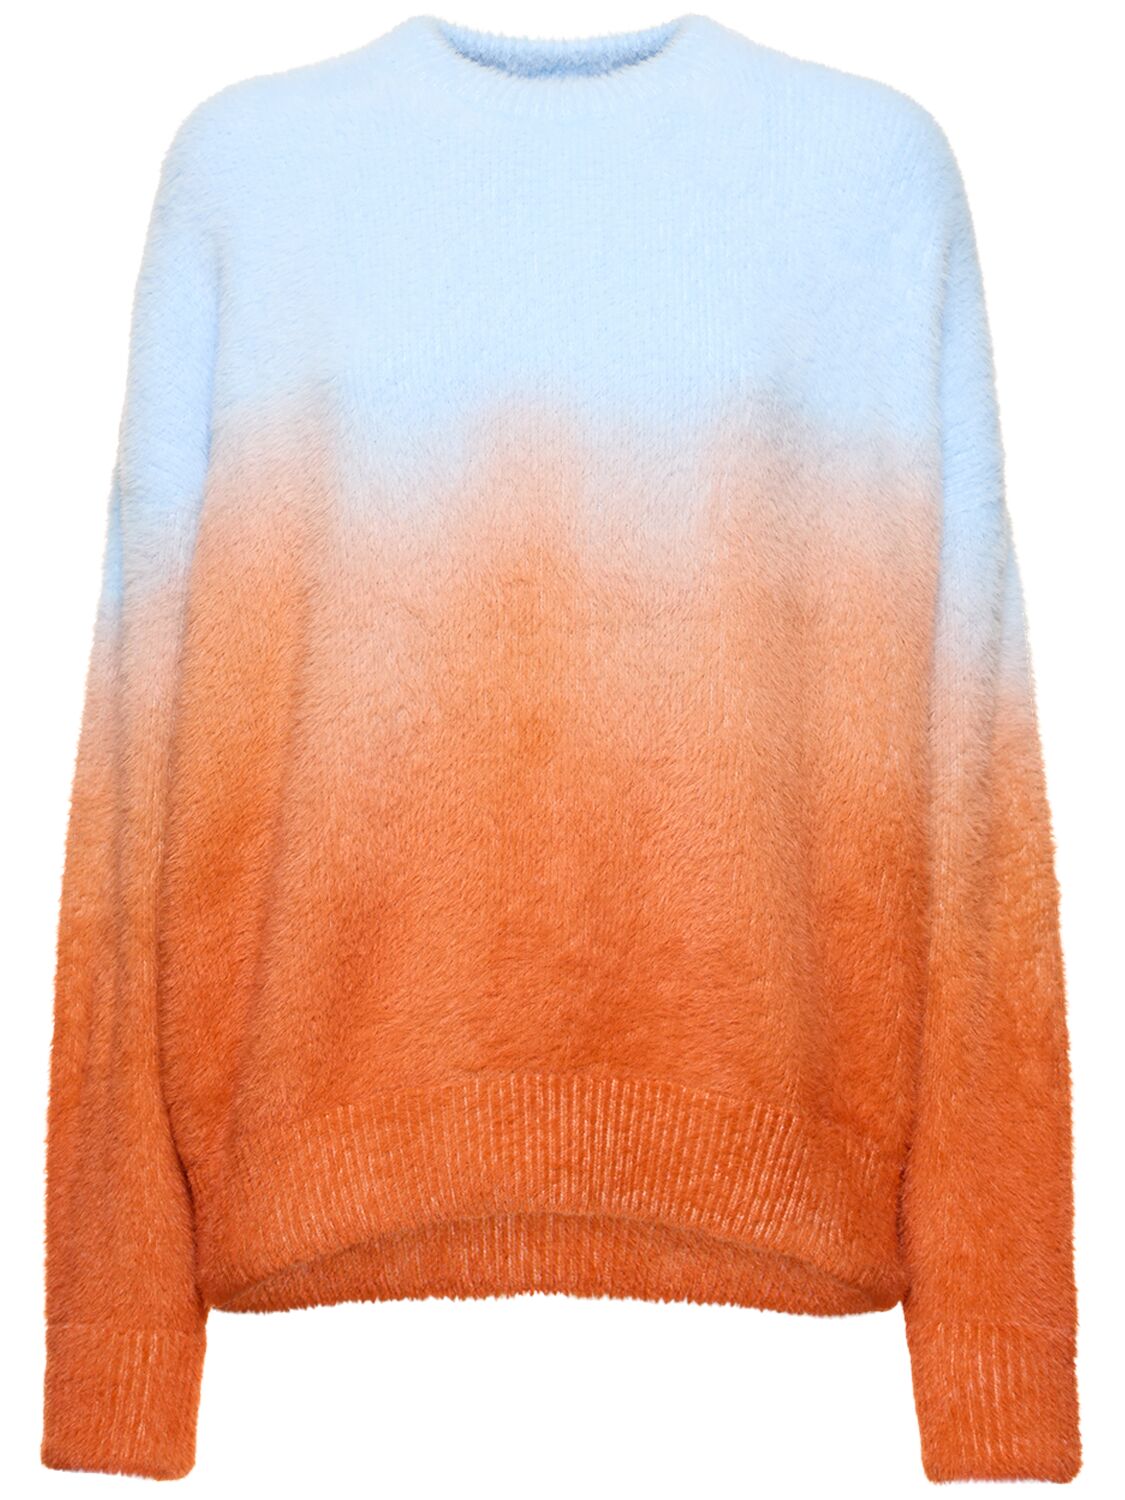 Sunset Degradé Knit Crewneck Sweater